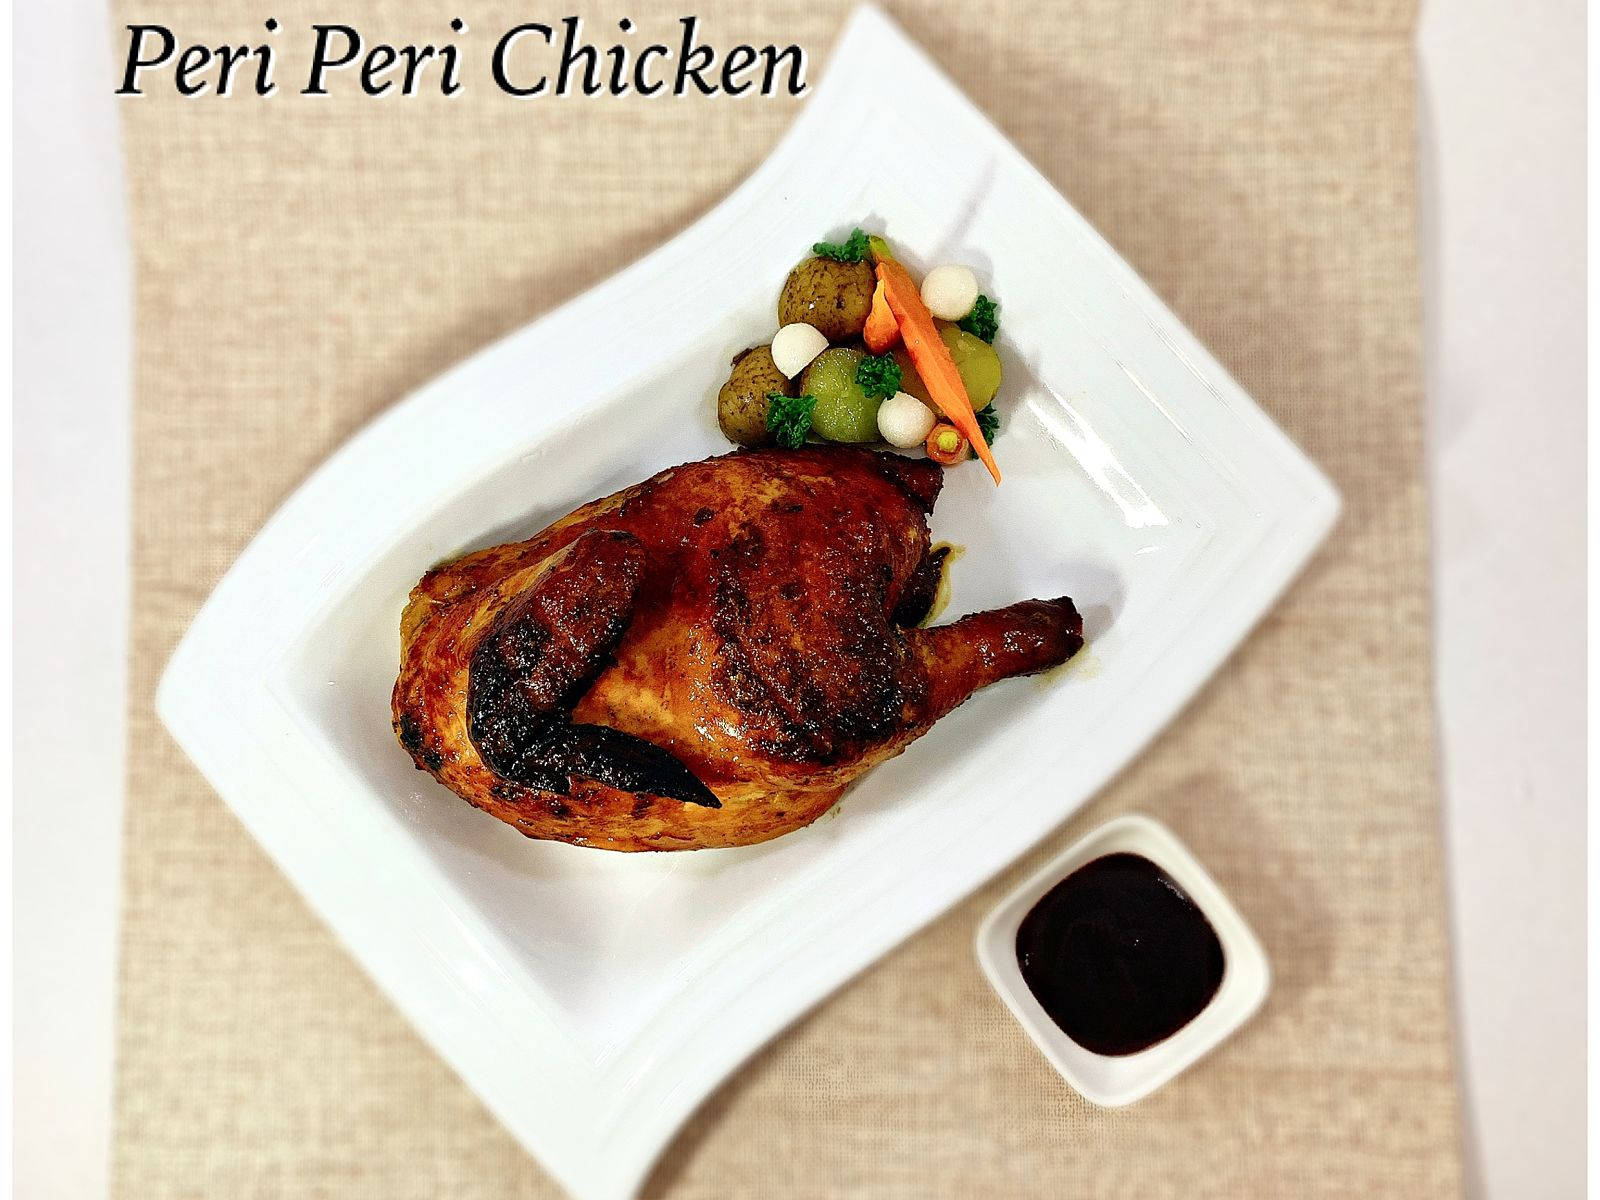 Designe Desktop Wallpaper med et velsmagende grillede Peri Peri-kyllingemåltid. Wallpaper